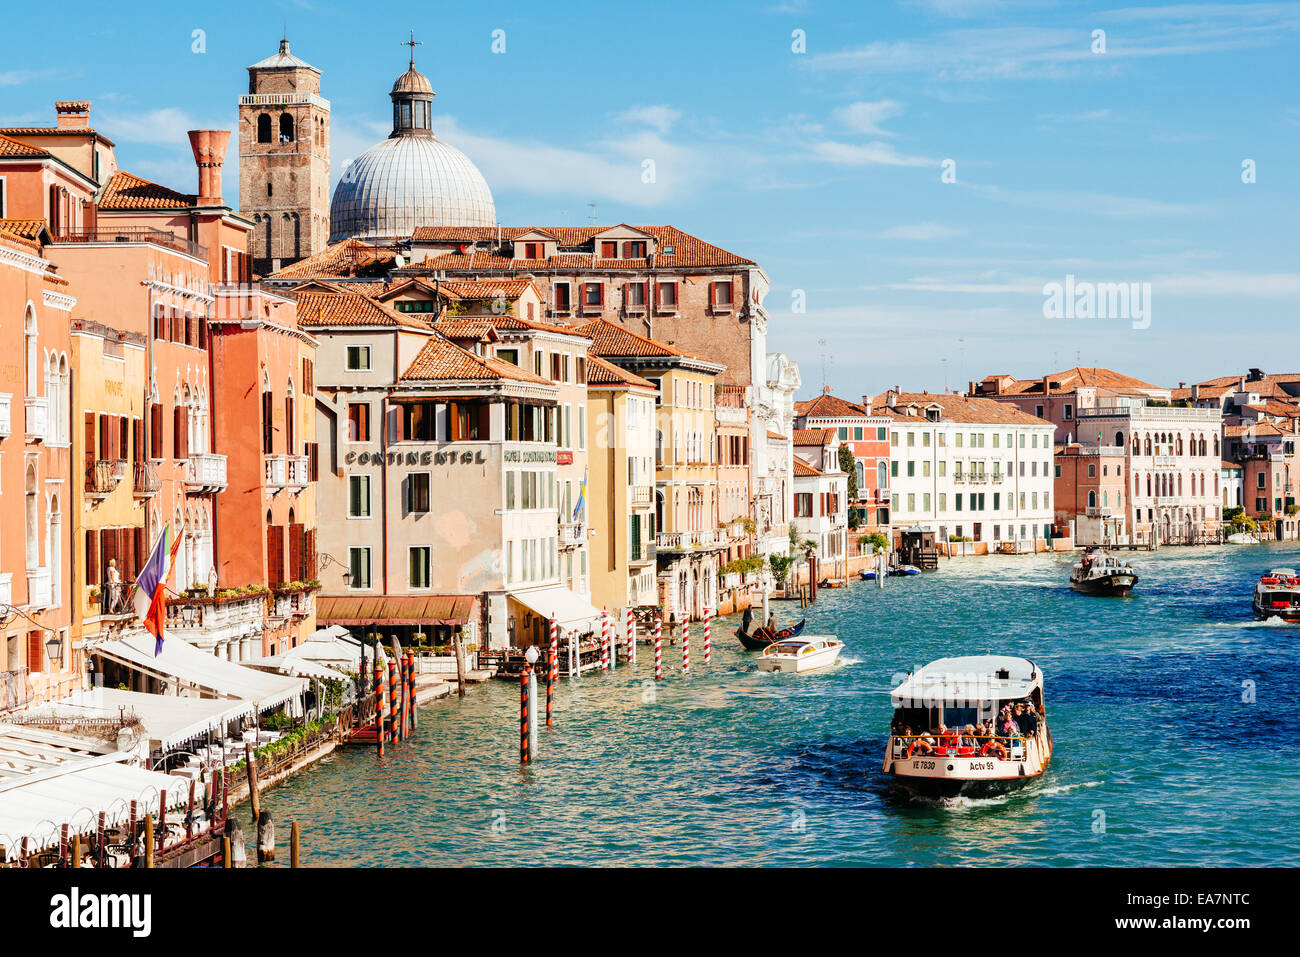 Venise, Italie - 26 octobre 2014 : l'église San Geremia et vaporetto ACTV sur Grand Canal. Le Vaporetto (bateau-bus) pourrait être traduit Banque D'Images